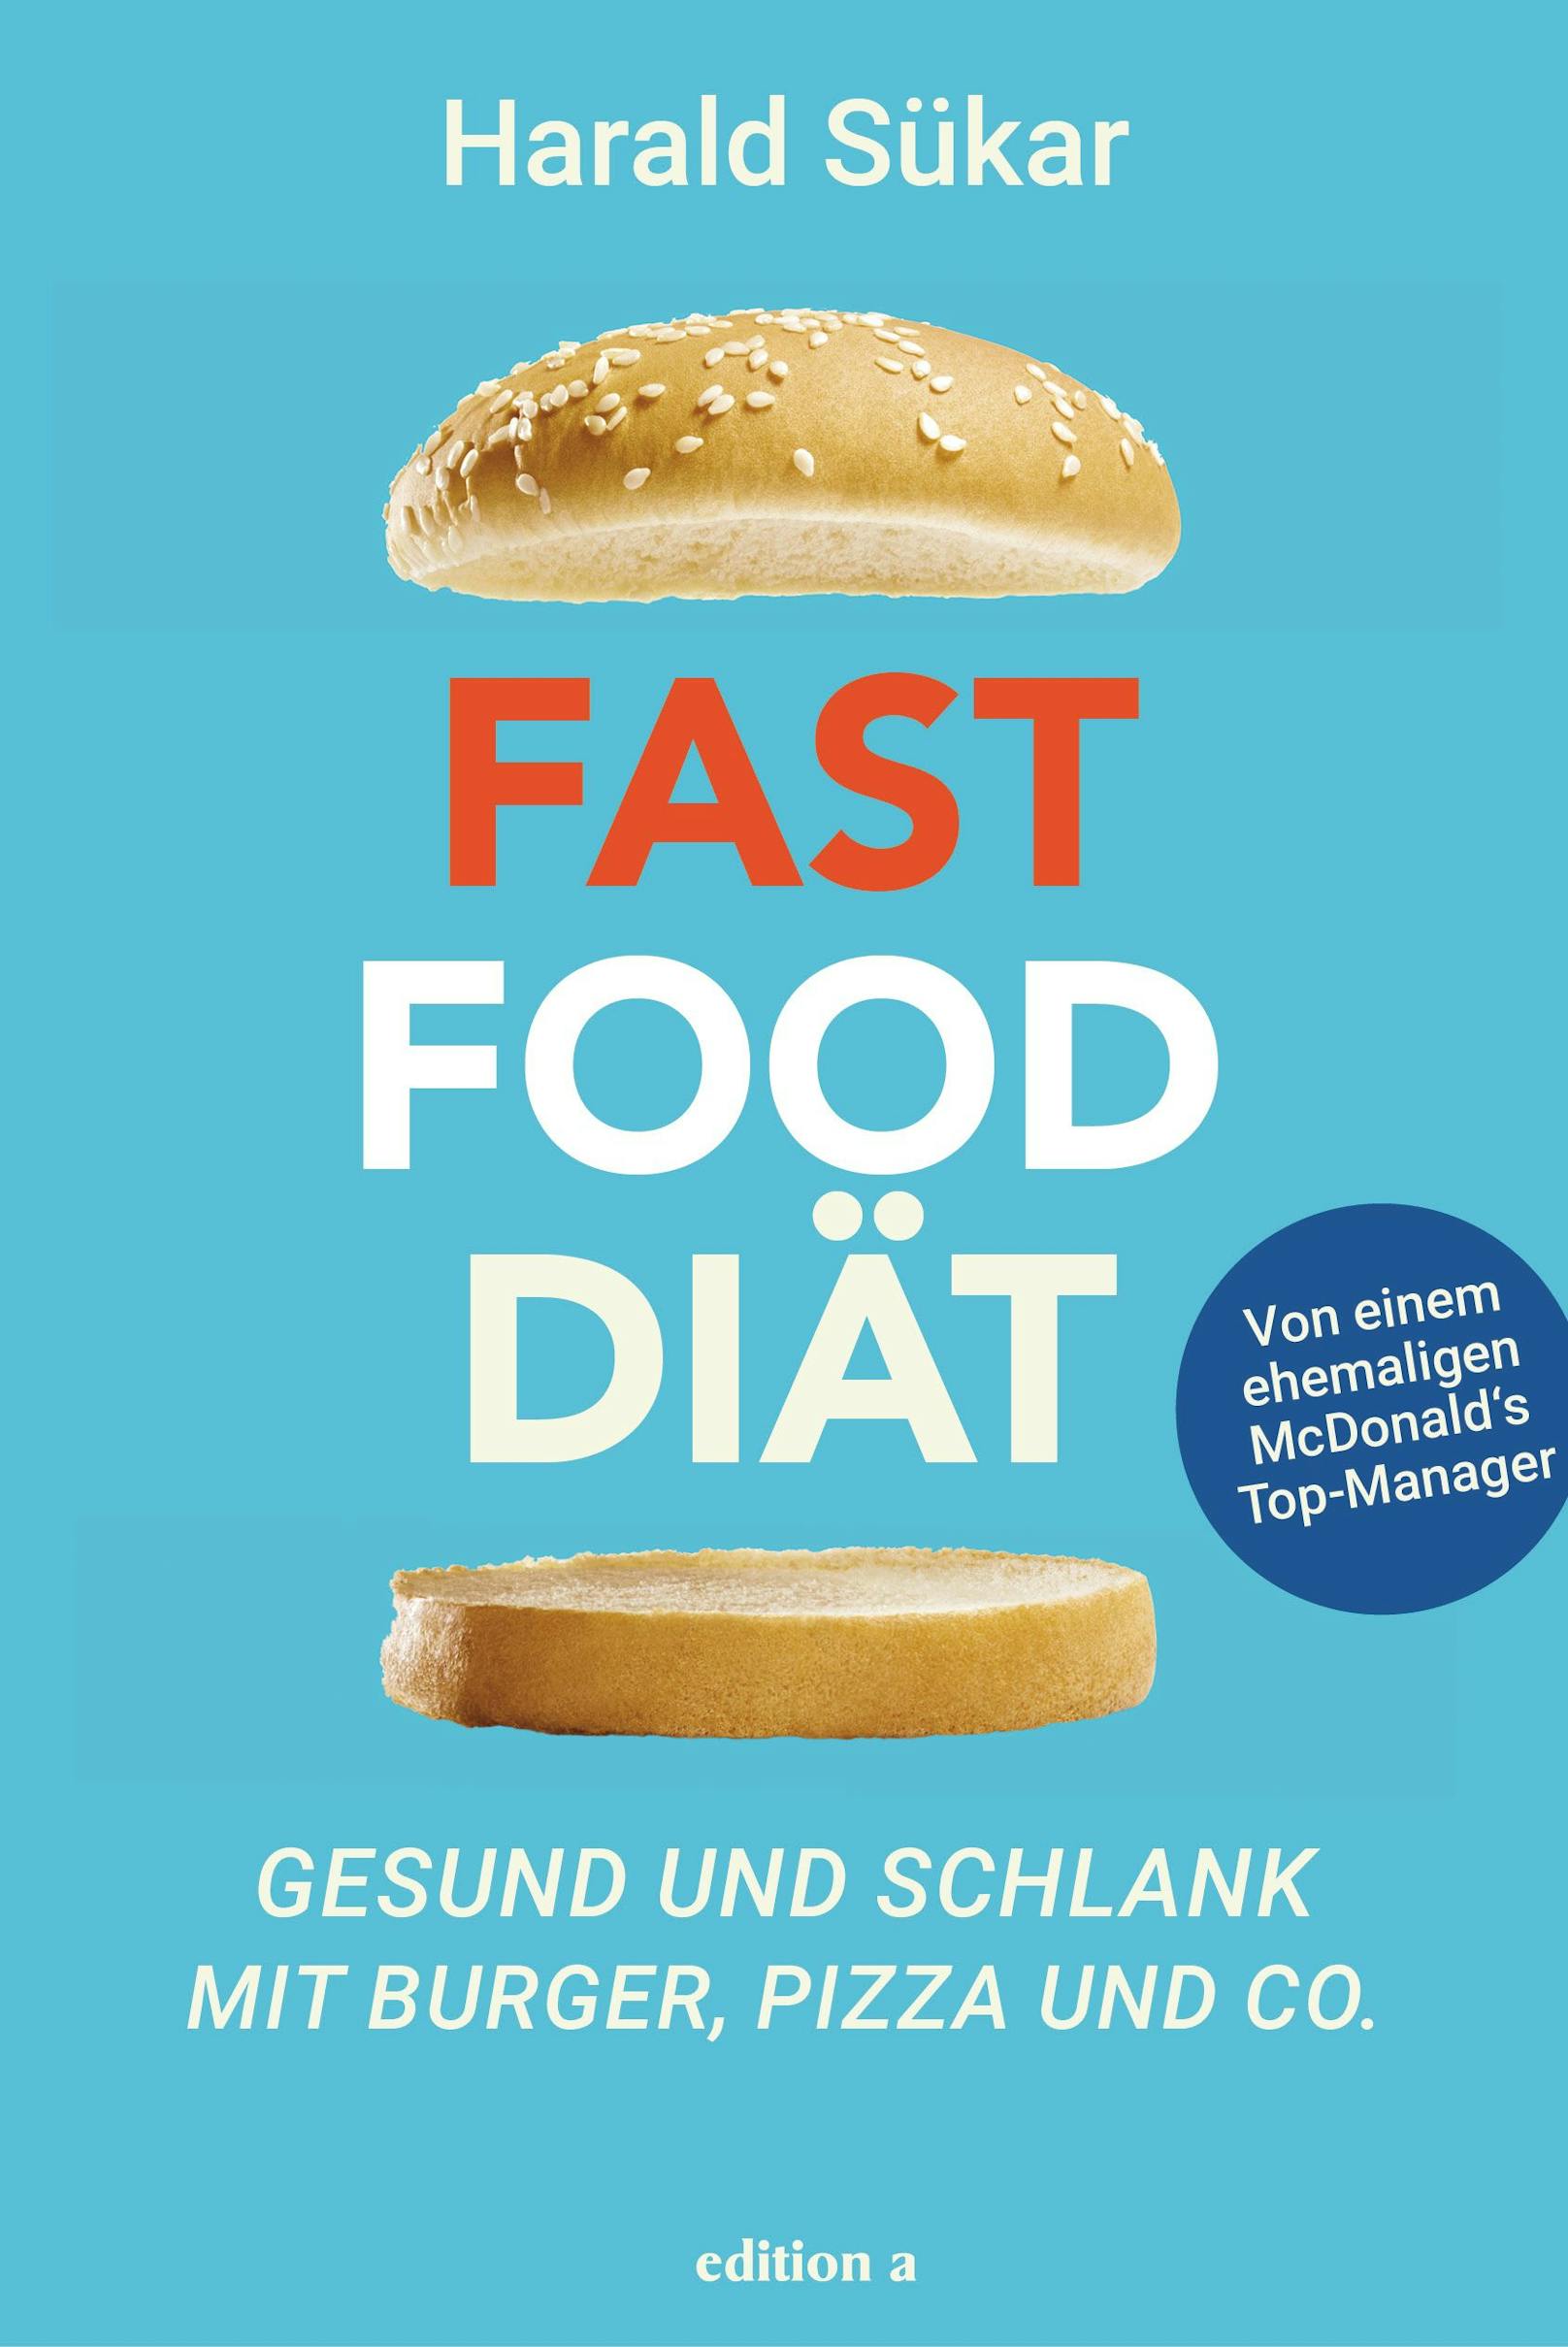 "Fast Food Diät – Gesund und schlank mit Burger, Pizza und Co." von&nbsp;Harald Sükar, erschienen bei edition a, 20 Euro.